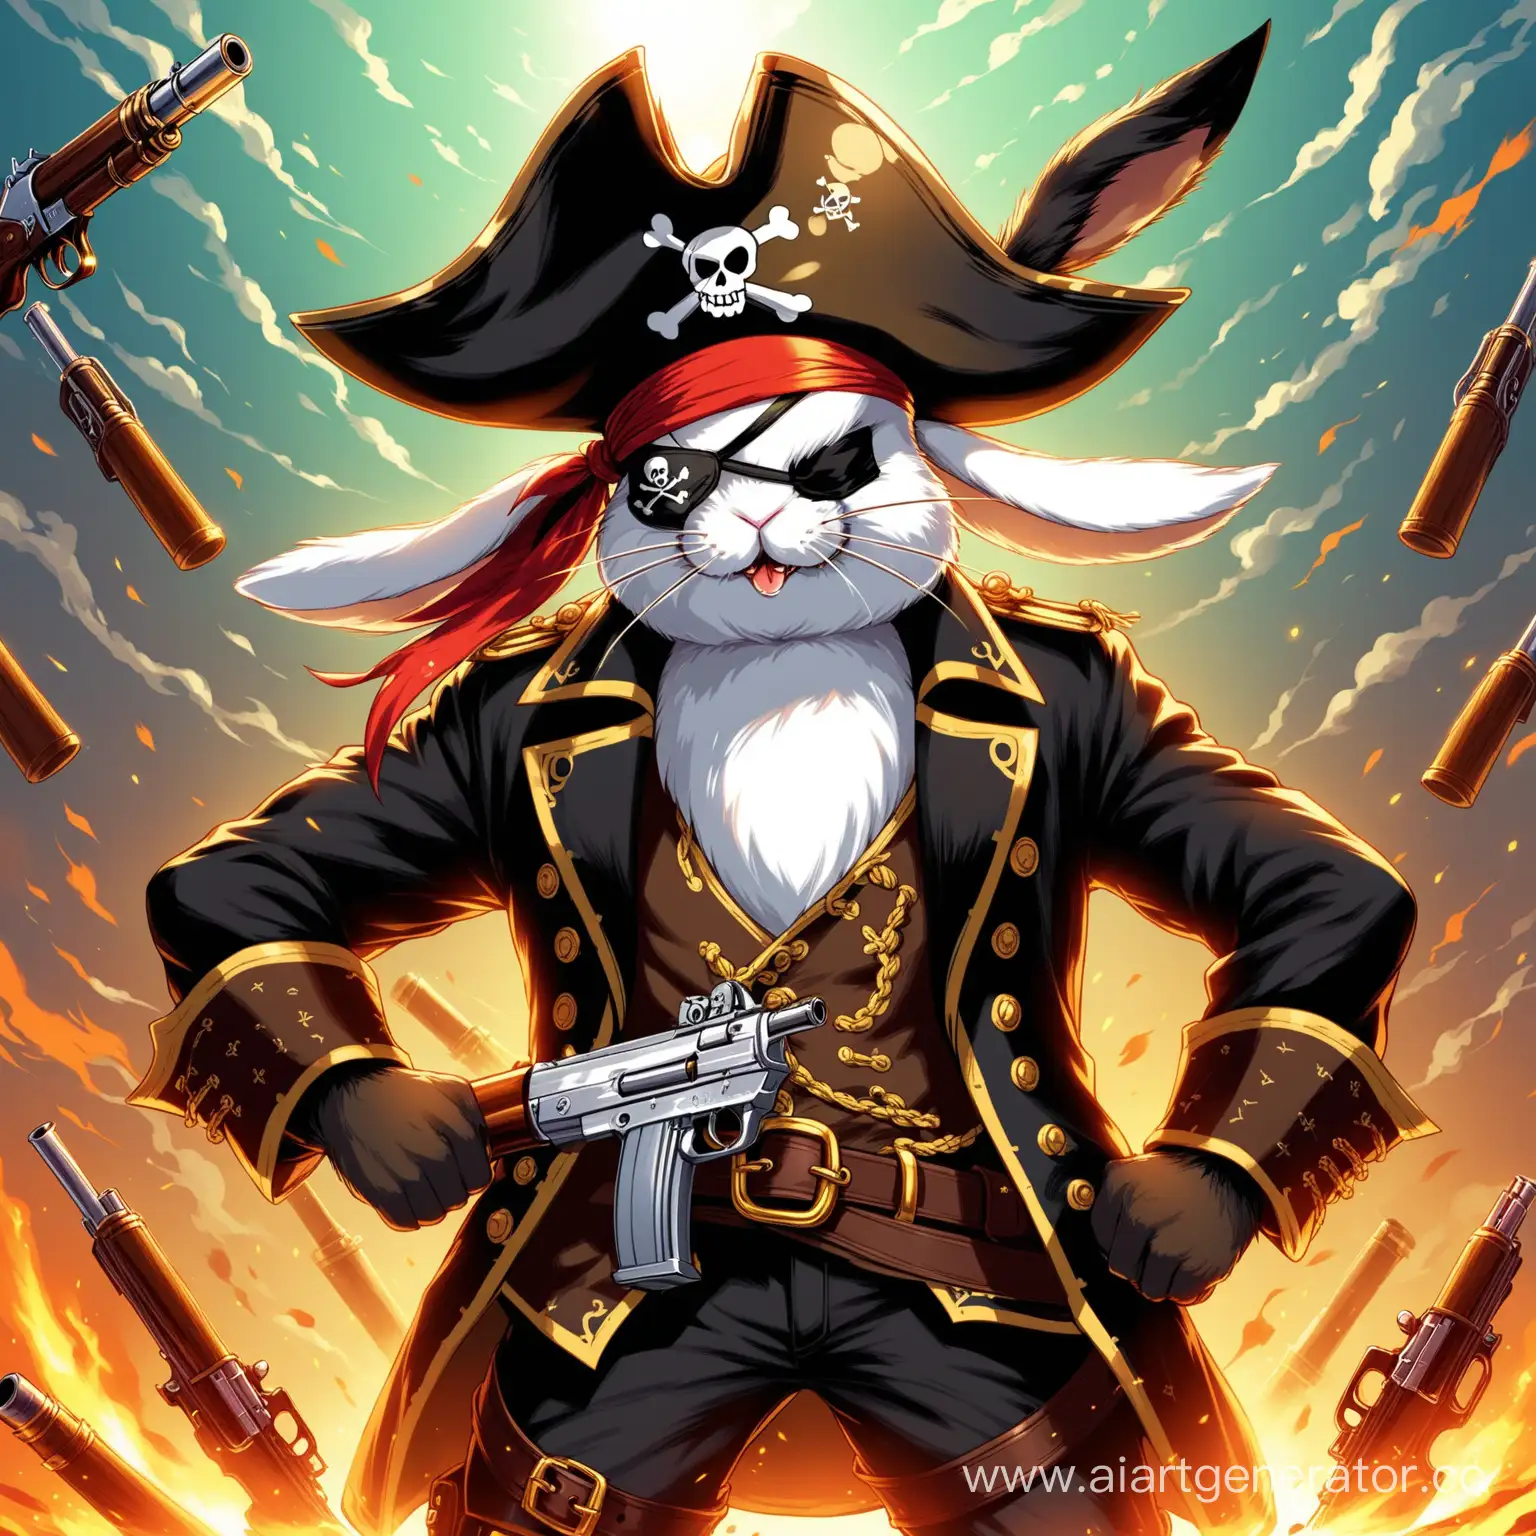 Fierce-Rabbit-Pirate-Wielding-Guns